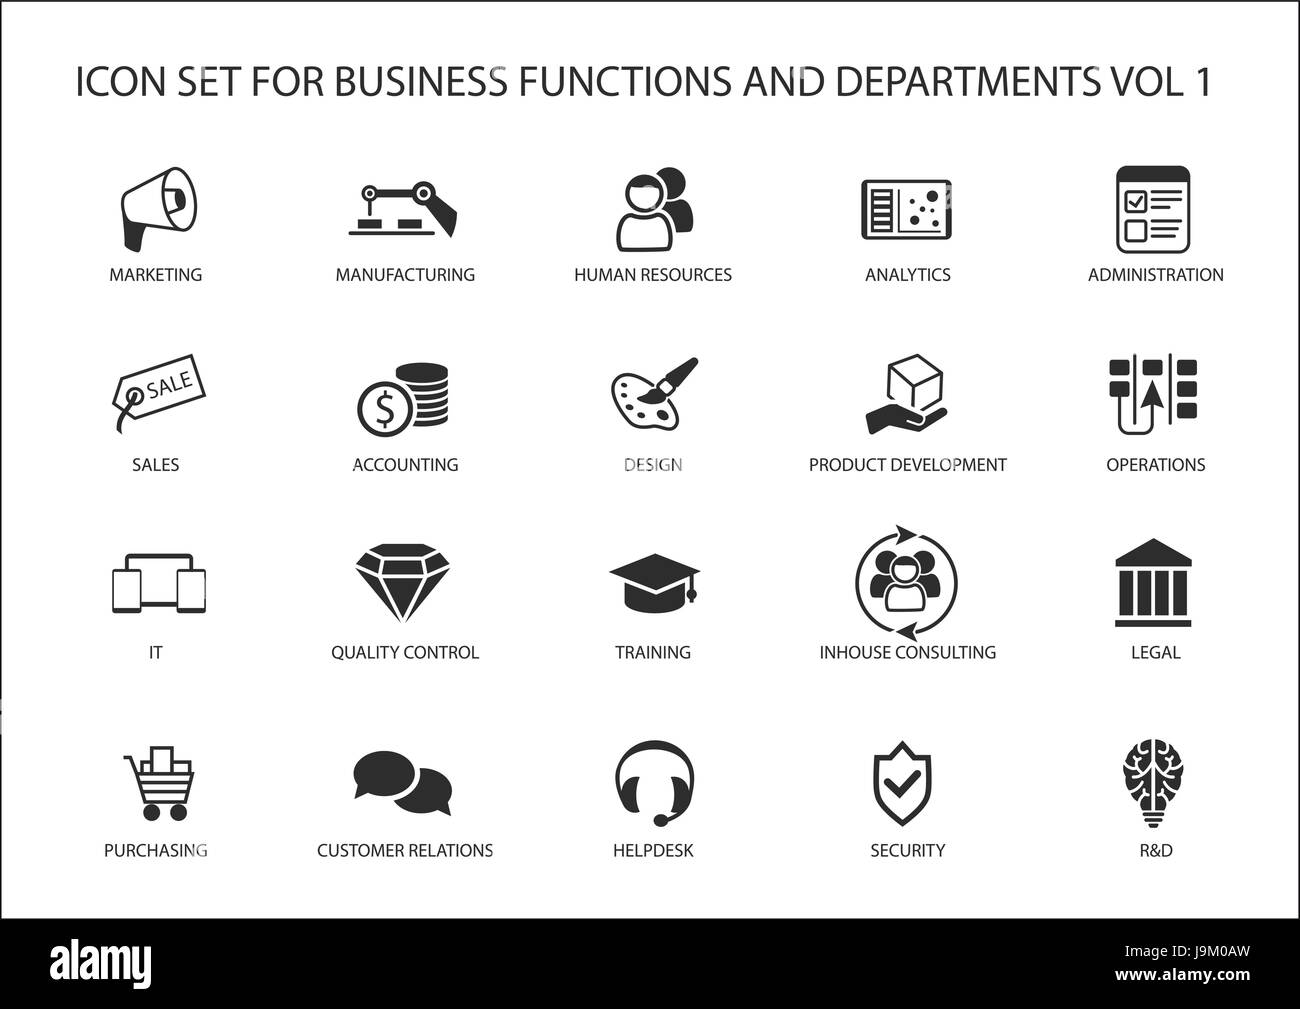 Varie funzioni aziendali e dipartimento di business icone vettoriali come le vendite, marketing, risorse umane, R&D, acquisti, contabilità e gestione in esercizio. Illustrazione Vettoriale